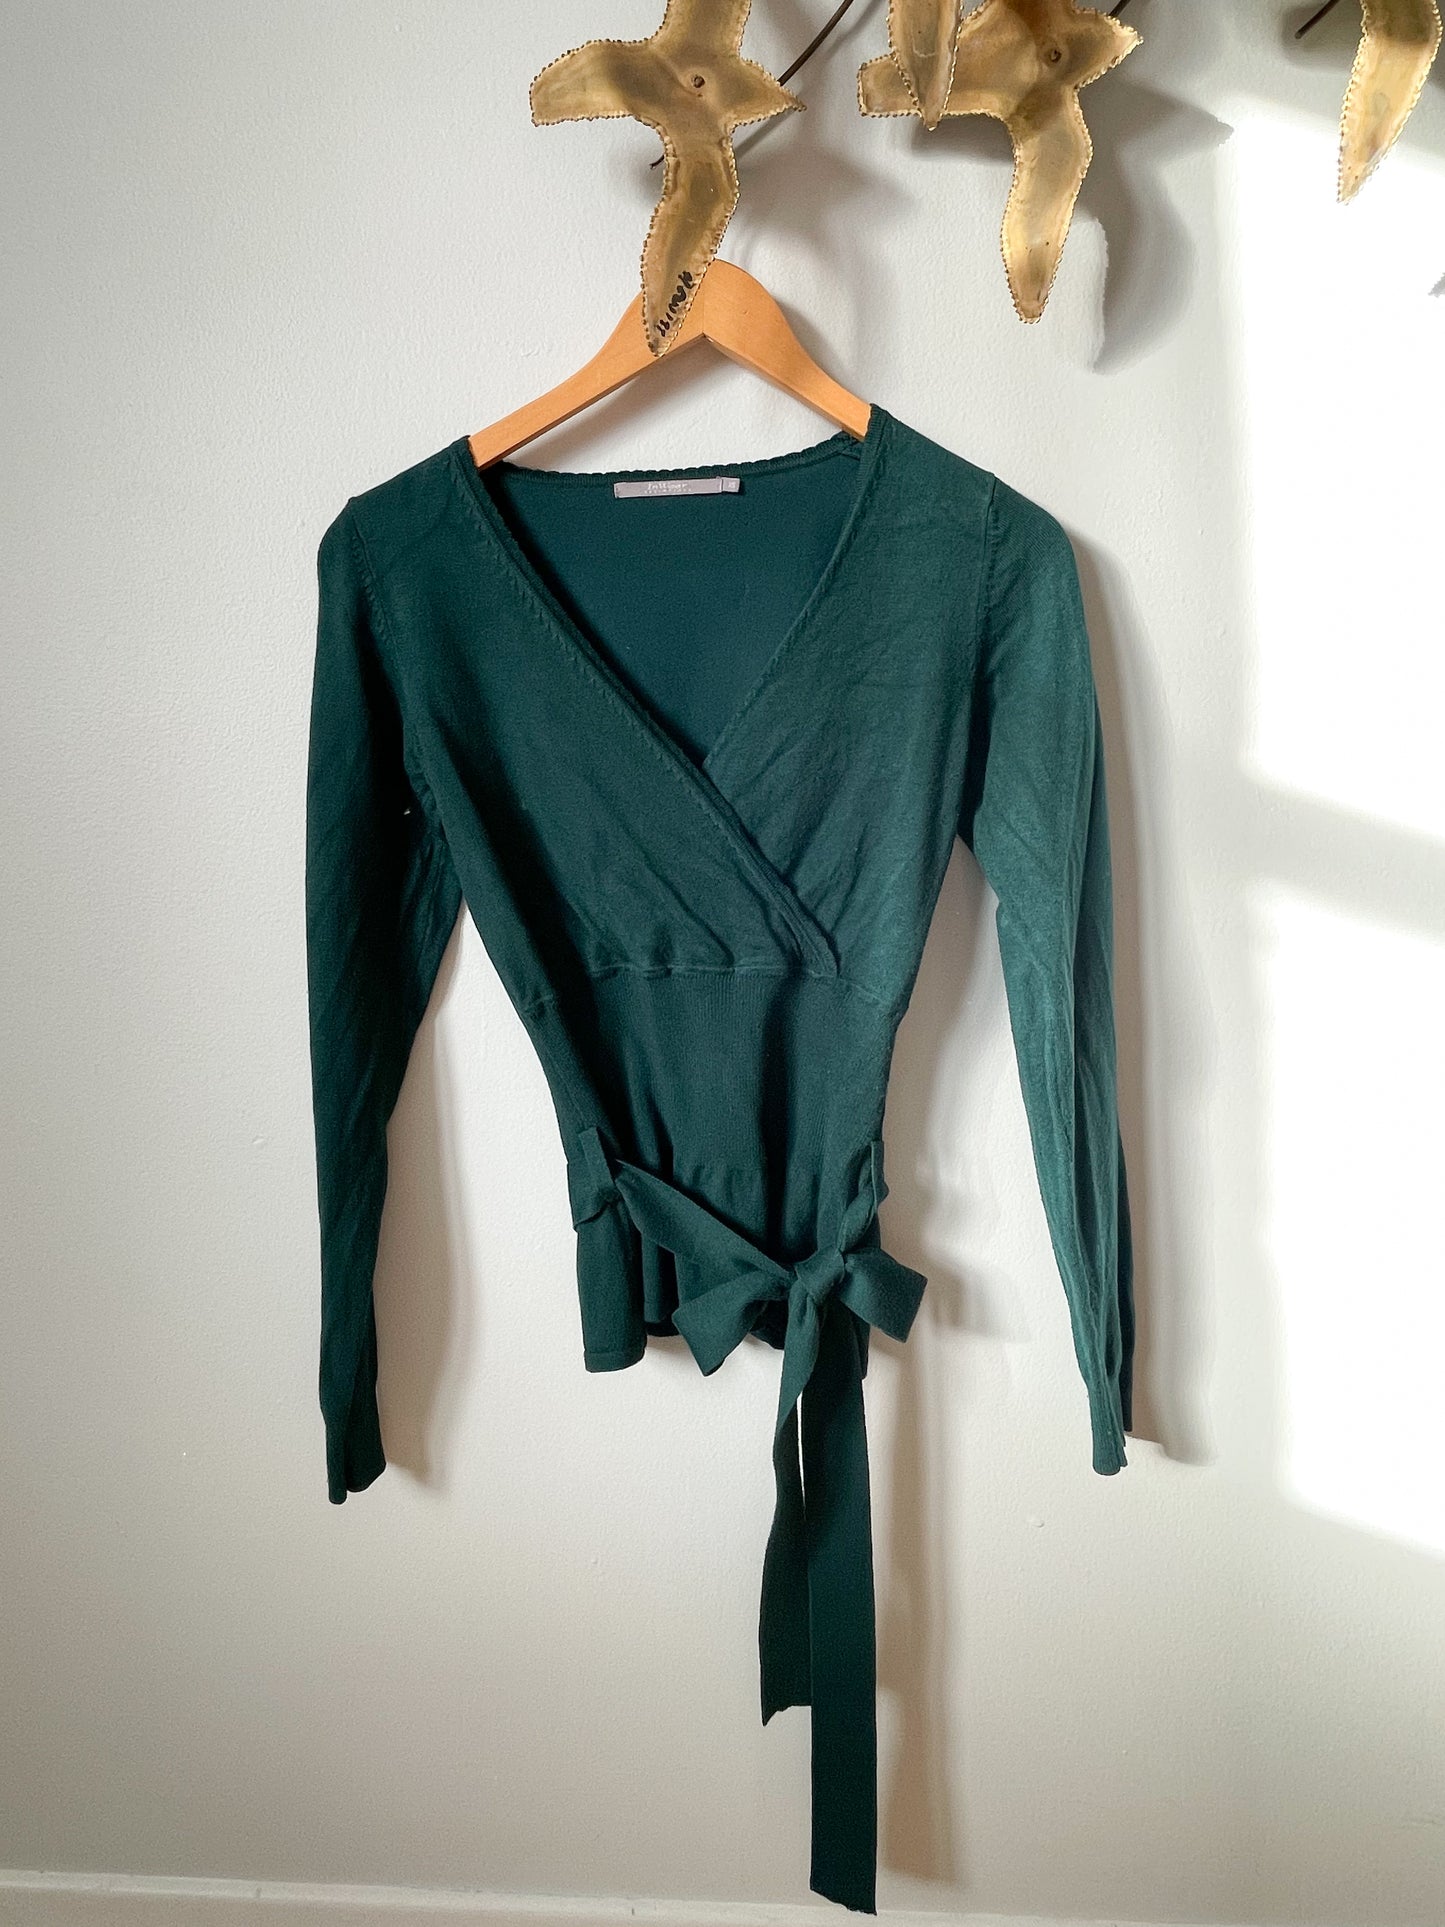 In Wear Hunter Green Wrap Style Sweater - XS